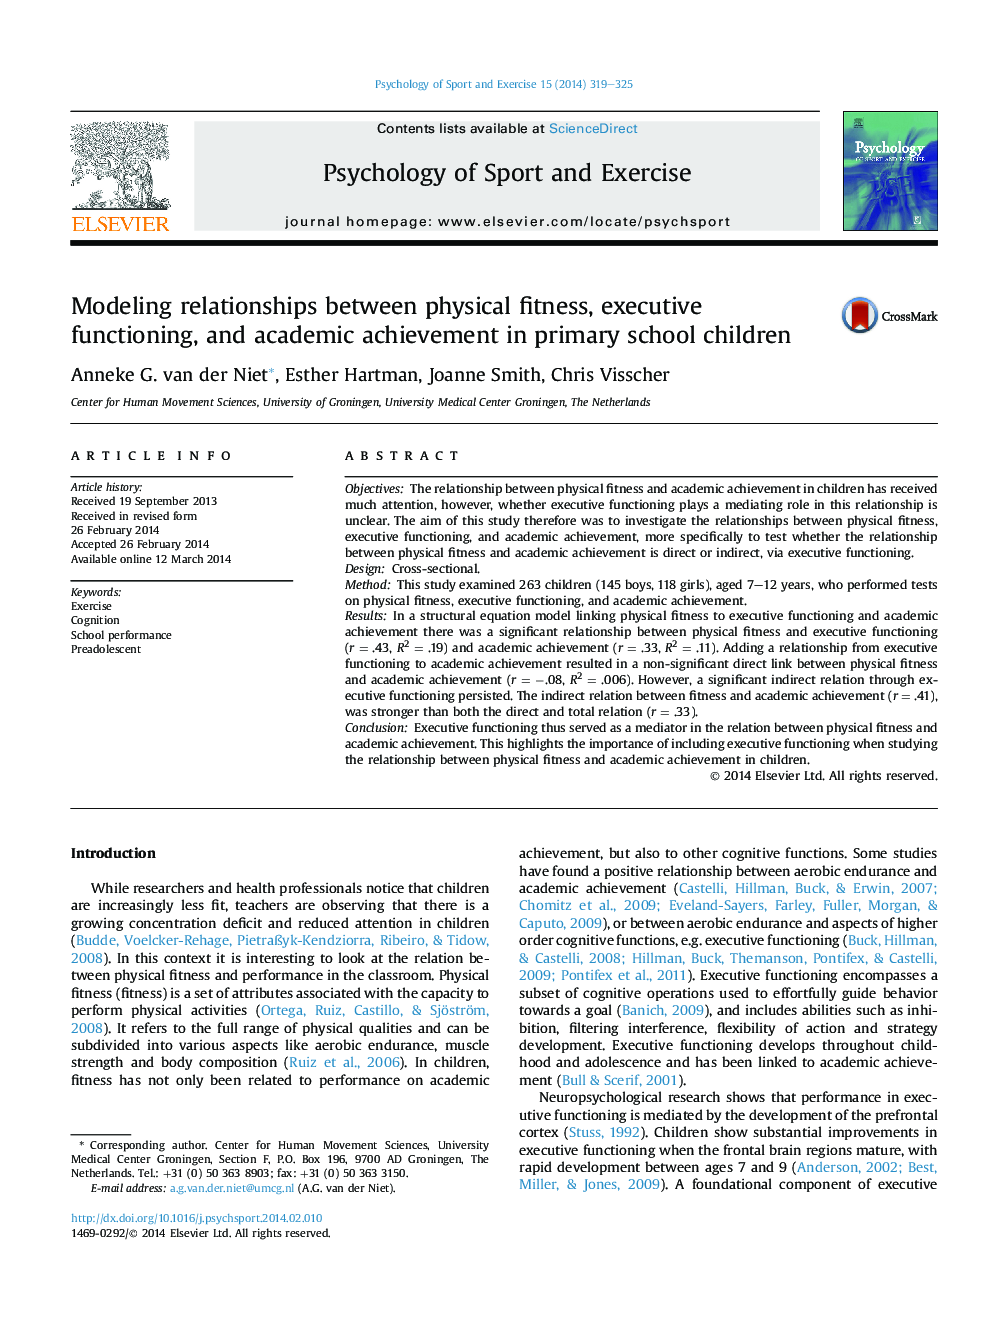 مدل سازی روابط بین آمادگی جسمانی، عملکرد اجرایی و پیشرفت تحصیلی در دانش آموزان ابتدایی 